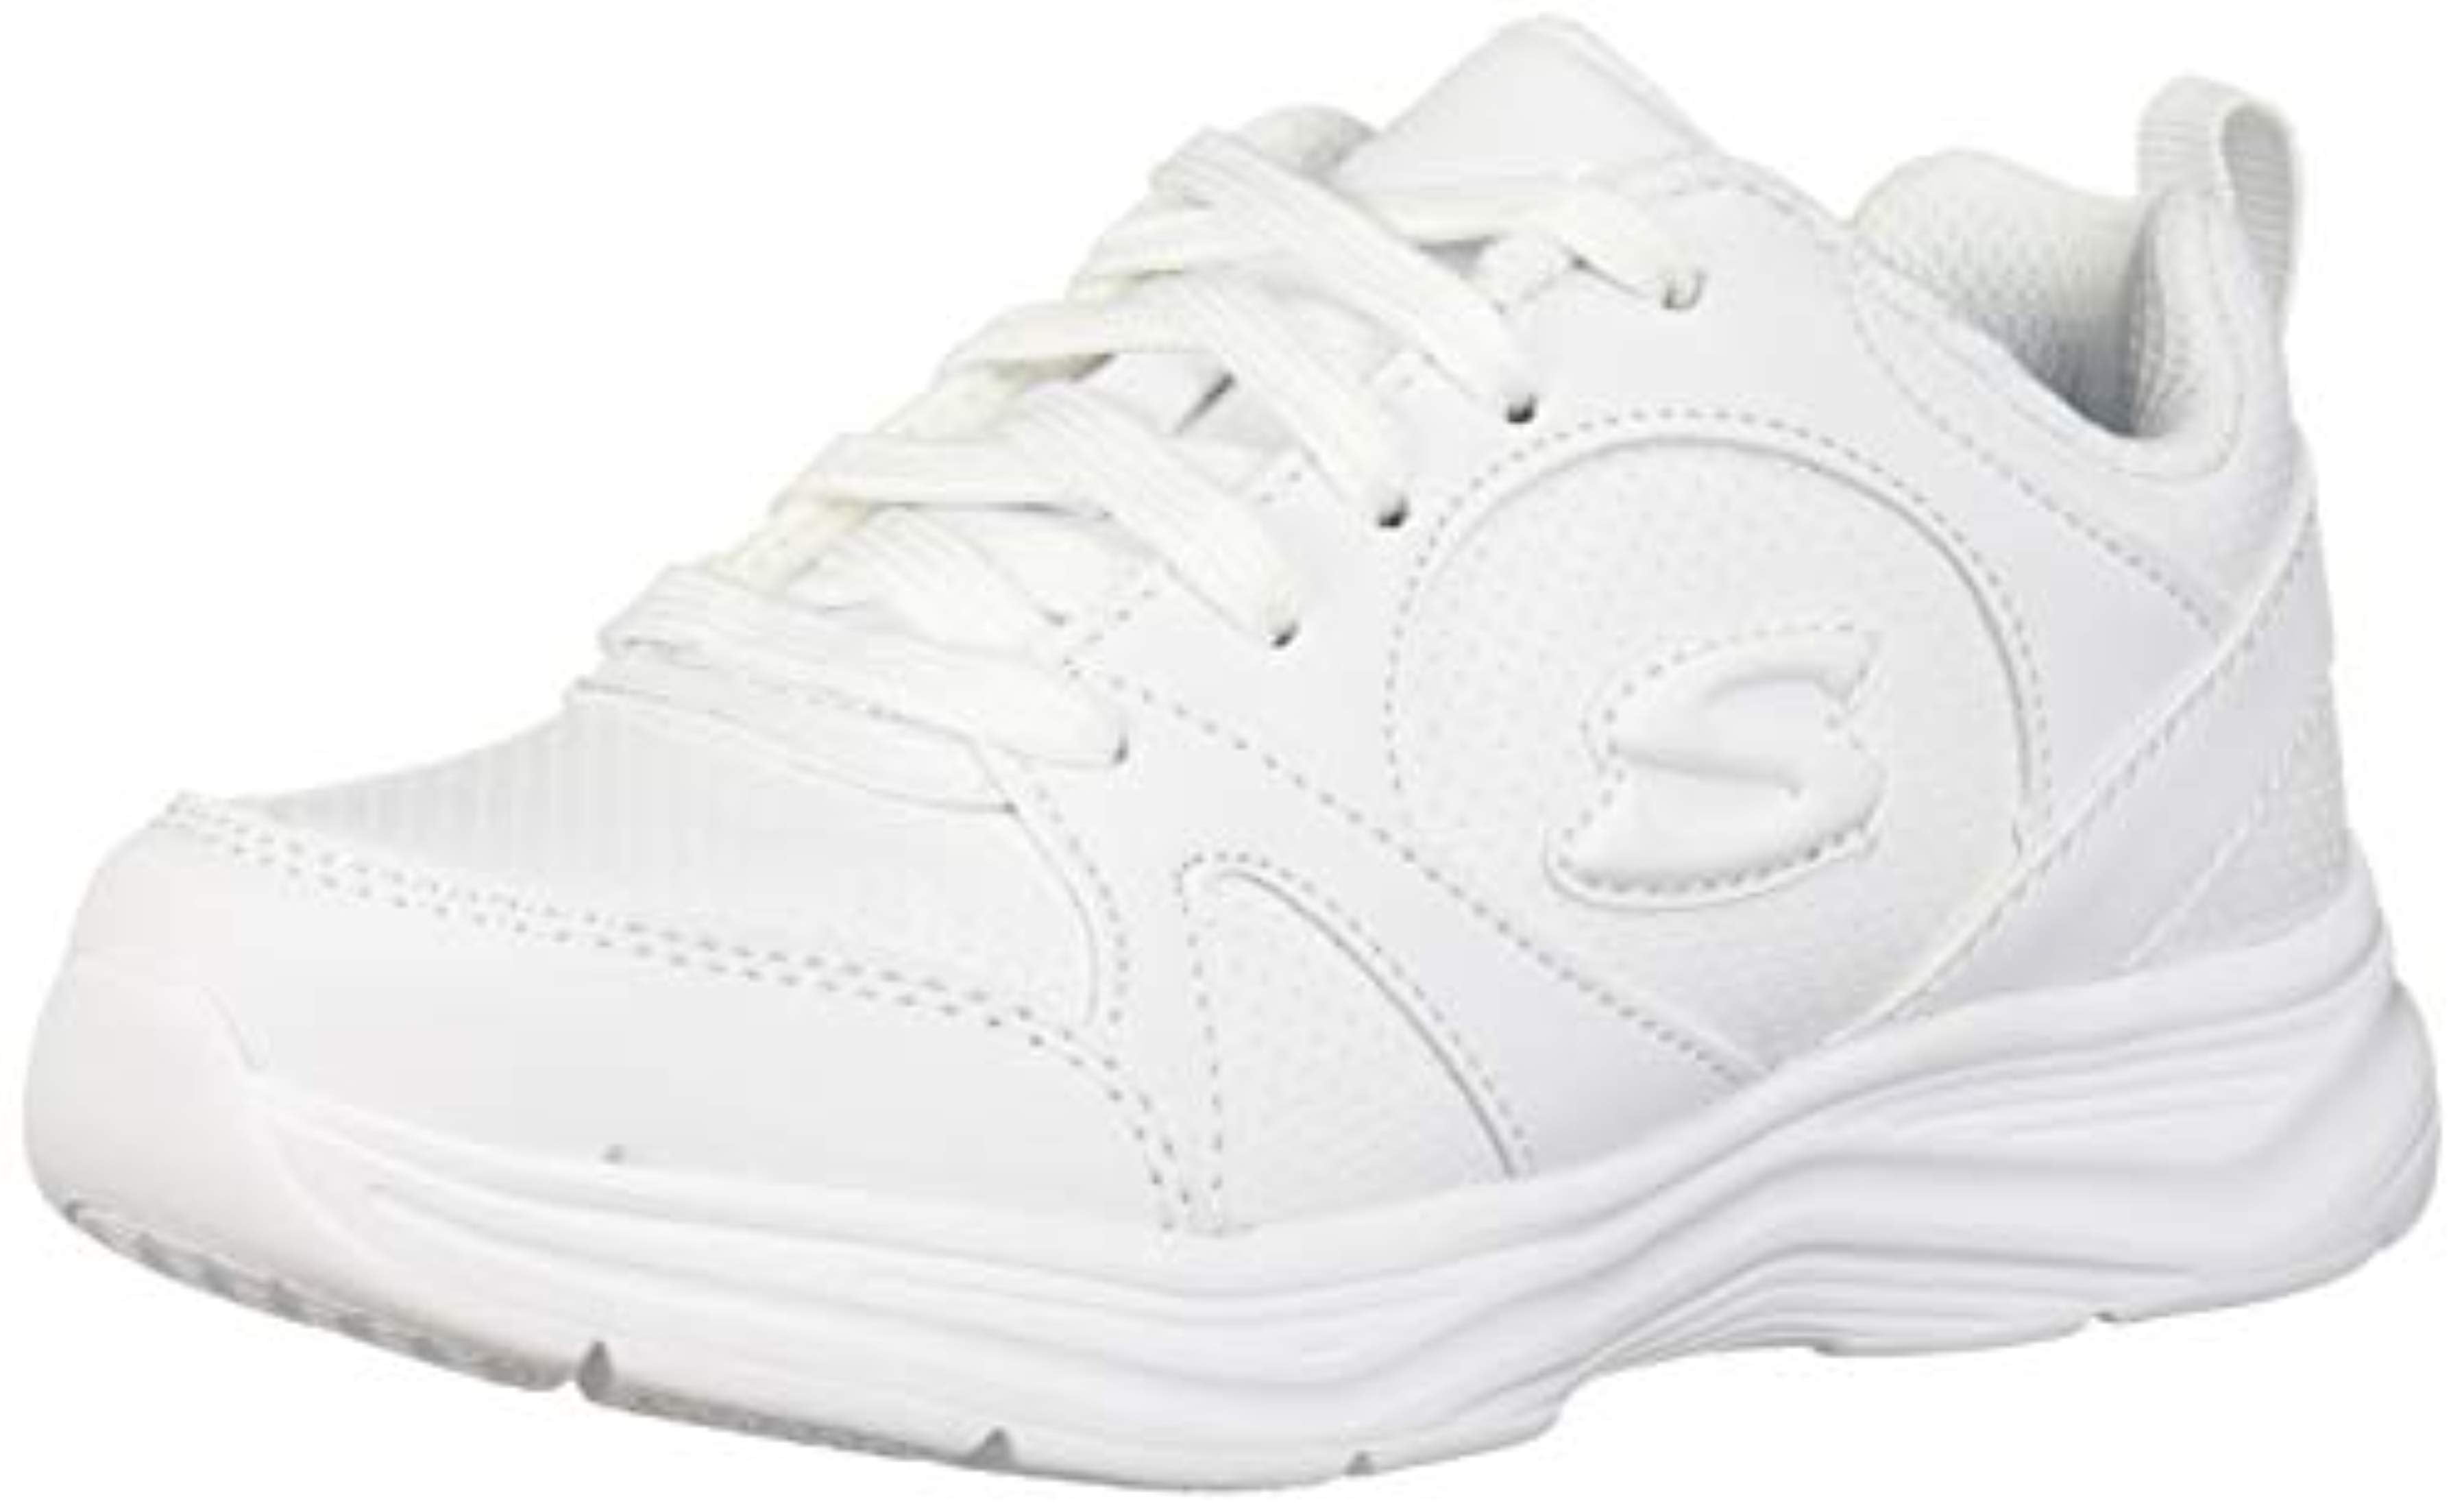 Skechers - Skechers Kids Girls' Glimmer Kicks Sneaker, White, 12 Medium ...